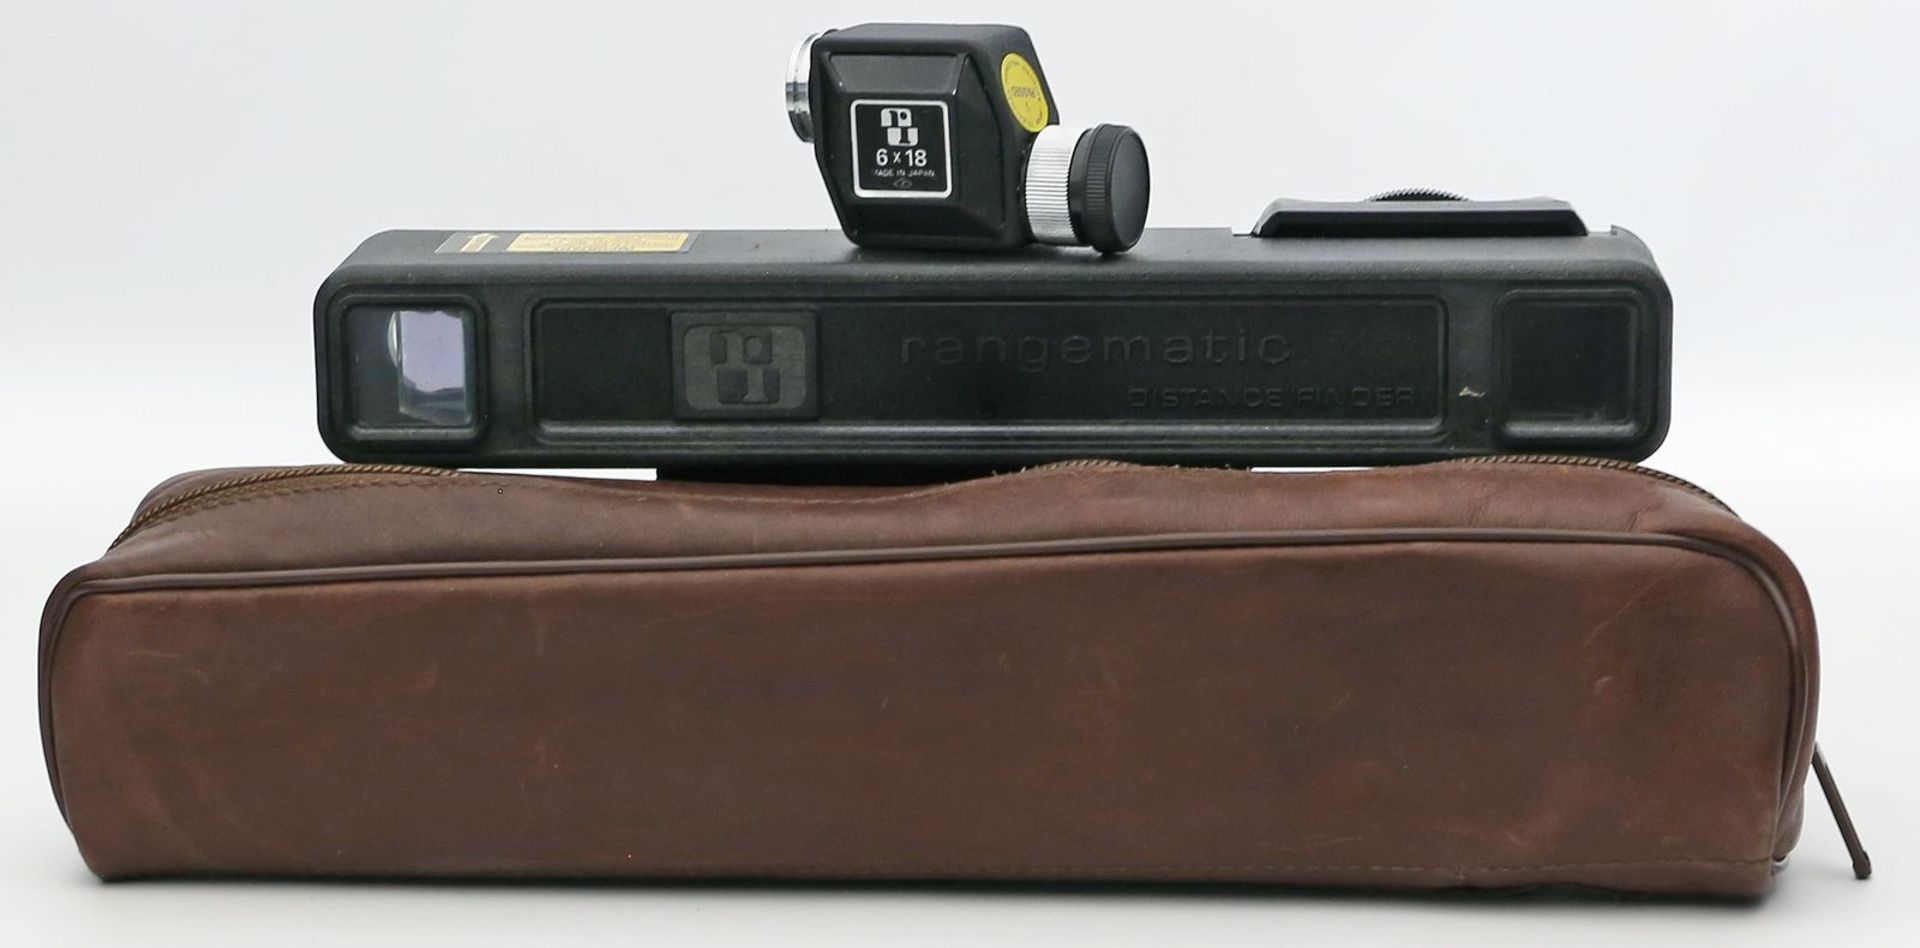 Vintage-Ragefinder, Ranging Measuring System.